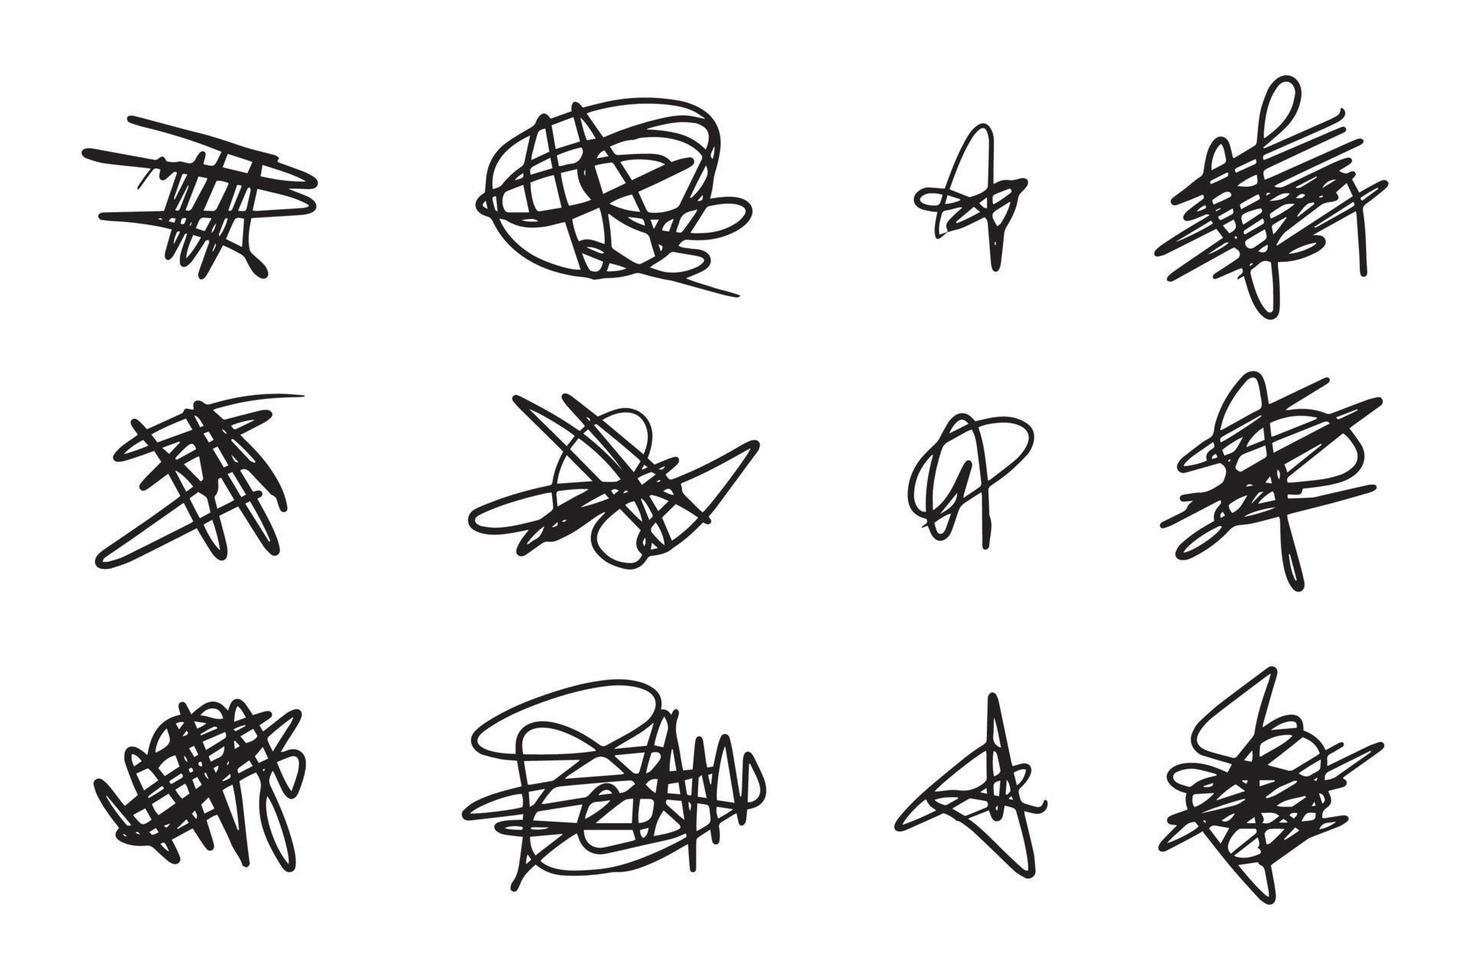 dibujado a mano de esbozo de garabatos enredados. garabato abstracto, patrón de garabato del caos aislado sobre fondo blanco. ilustración vectorial vector